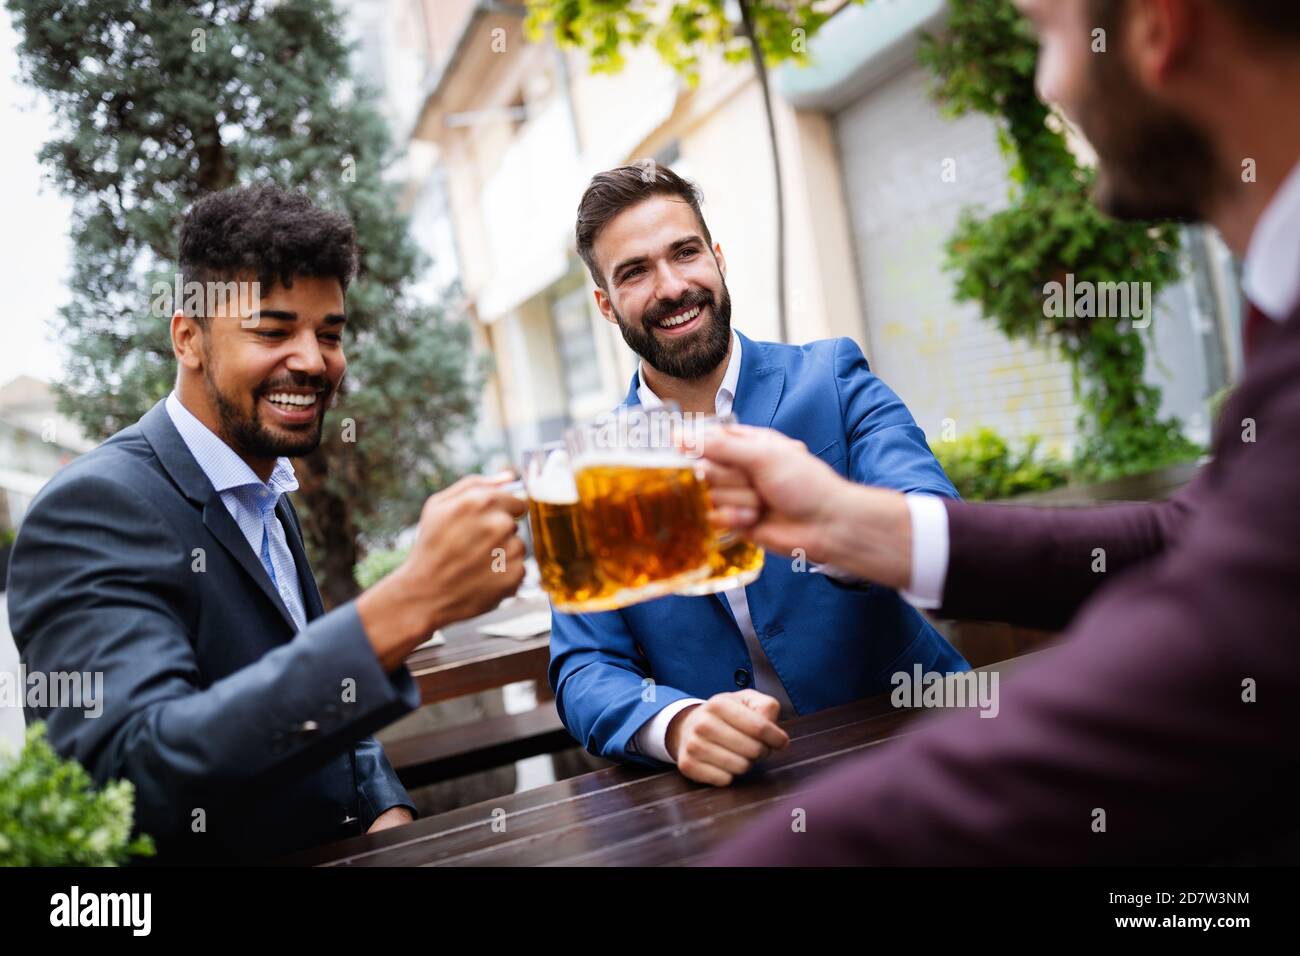 Les hommes d'affaires sont en train de boire de la bière, de parler et de sourire tout en se reposant au pub Banque D'Images